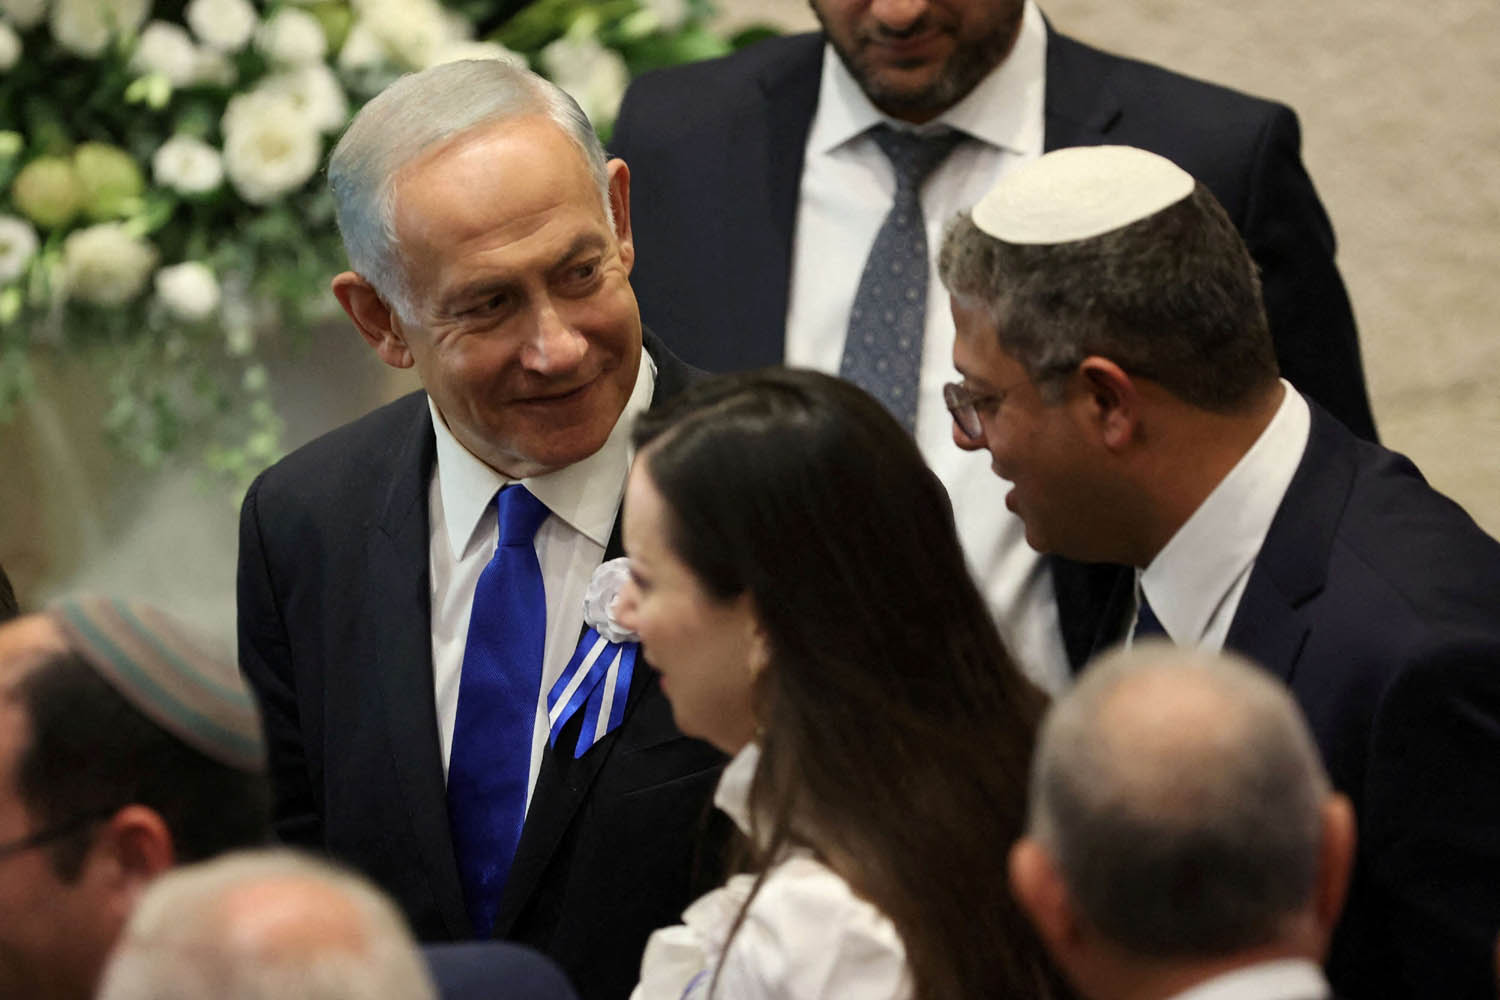 رئيس الوزراء الإسرائيلي بنيامين نتانياهو مع الزعيم اليميني المتطرف ايتمار بن غفير في الكنيست